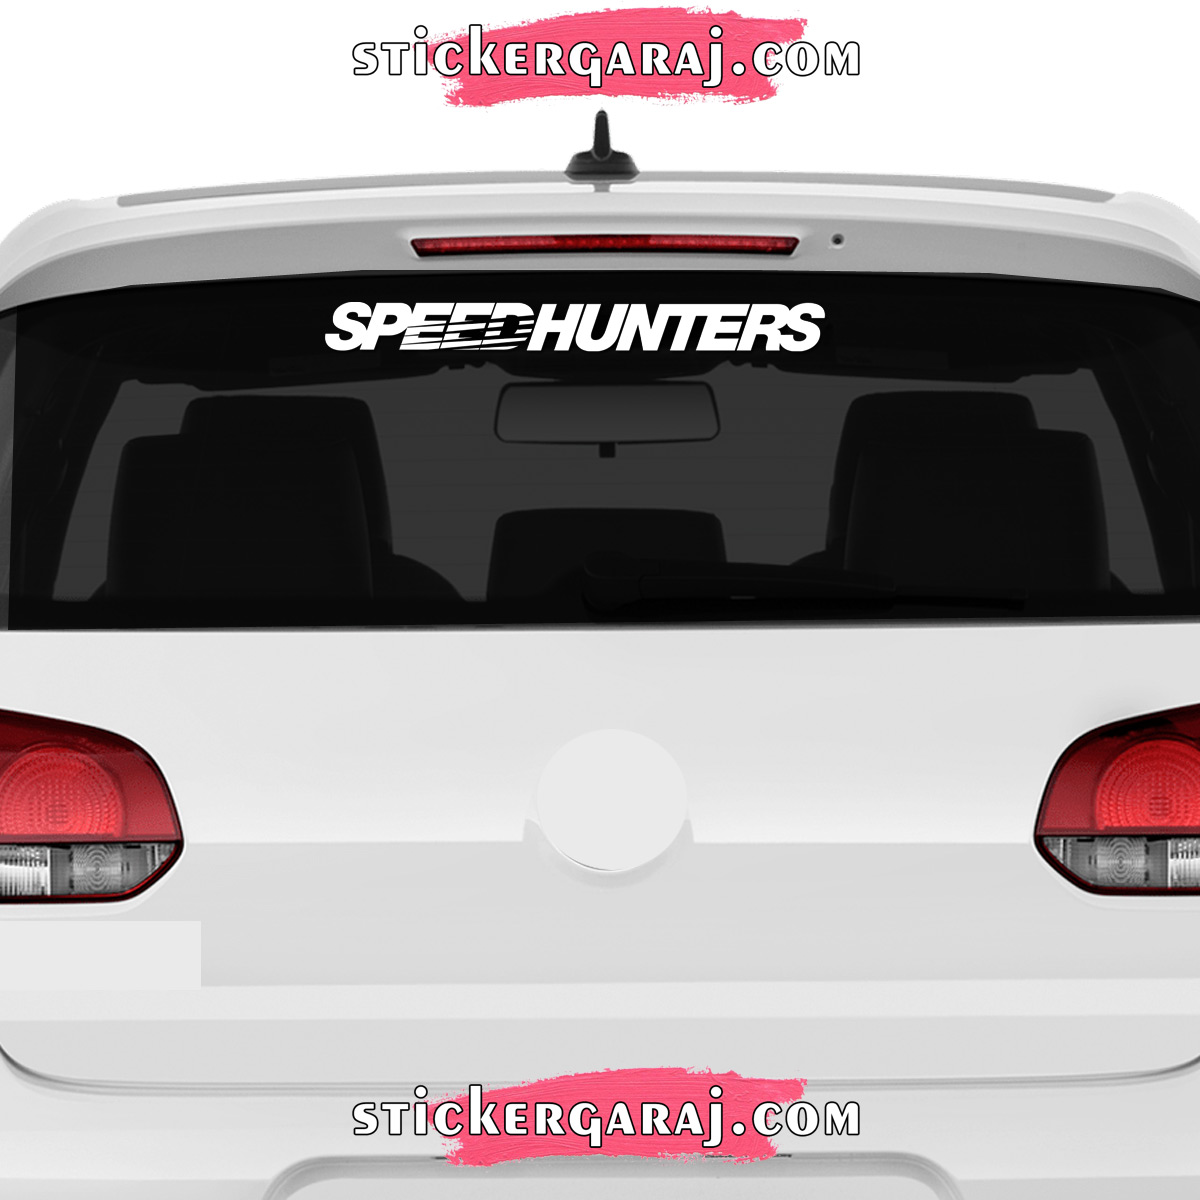 Chevrolet cam sticker - Chevrolet cam sticker - speedhunters